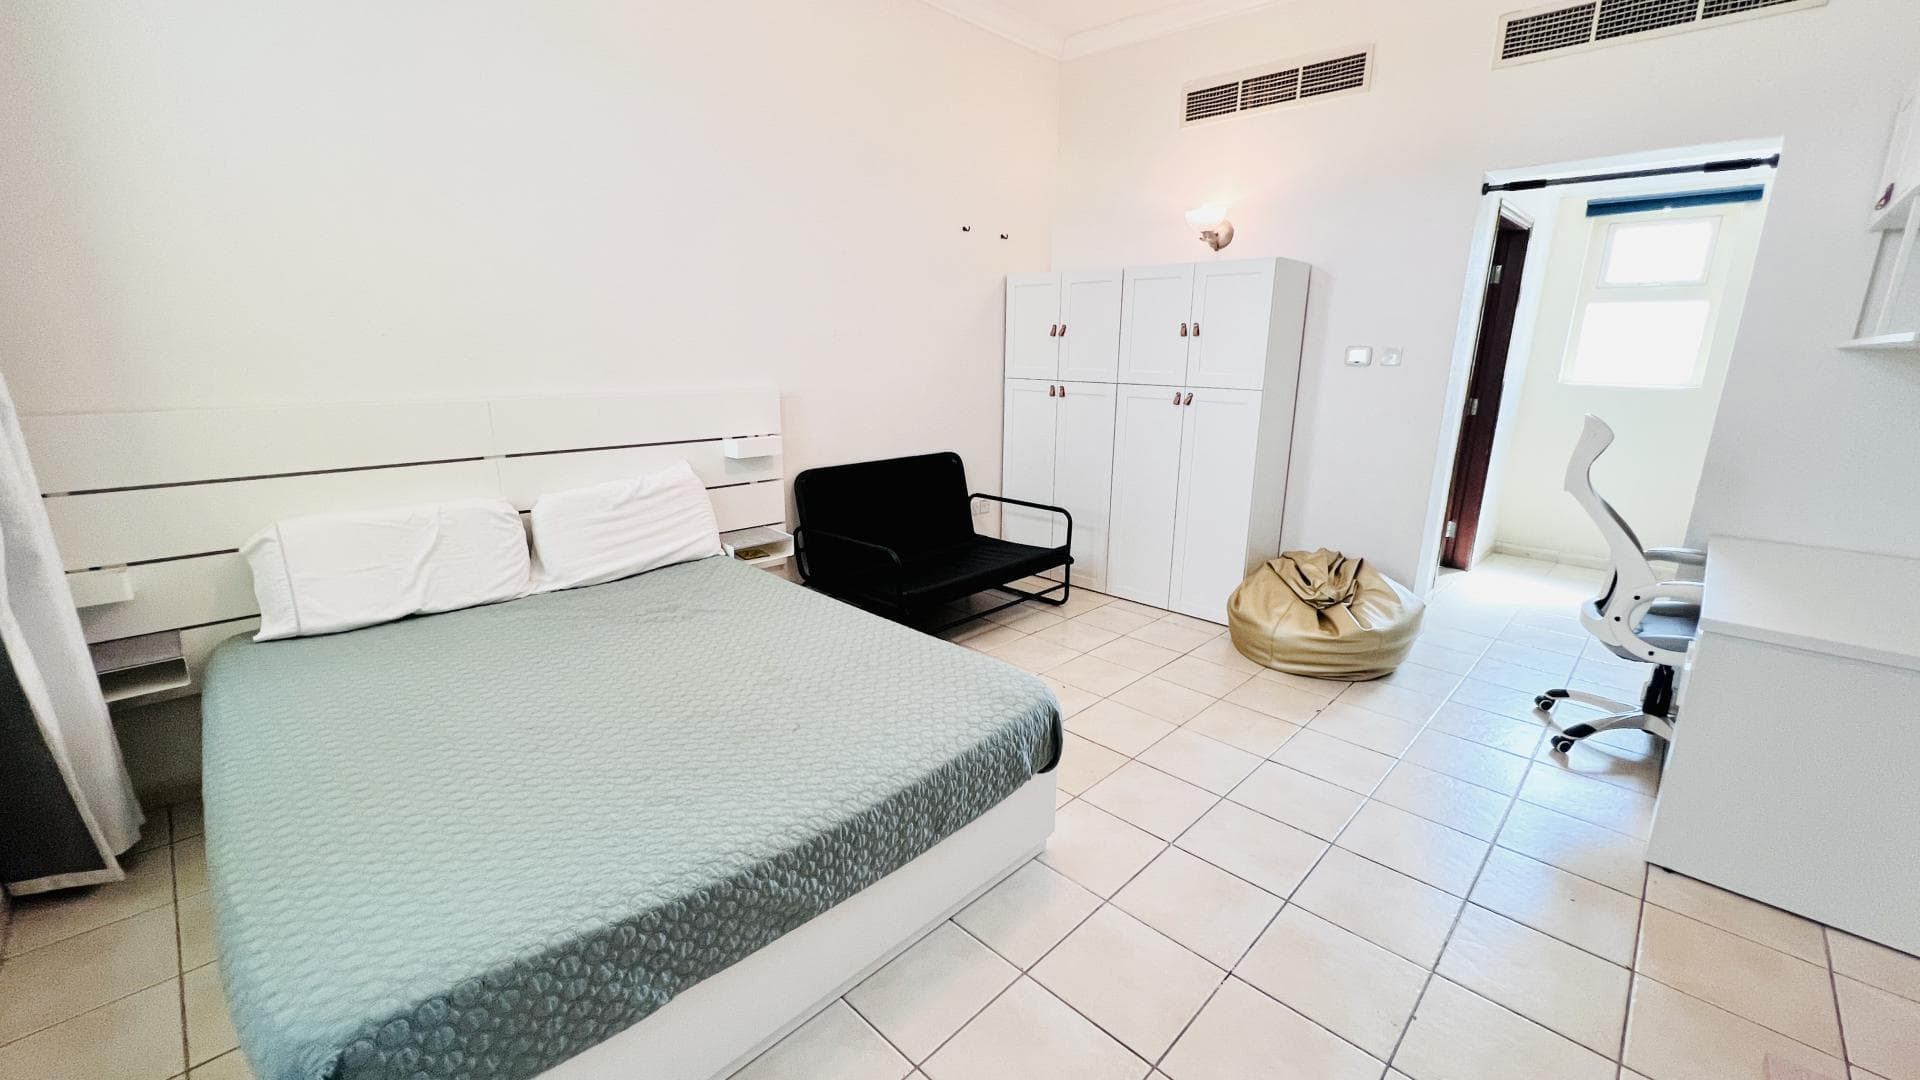 4 Bedroom Villa For Rent Al Thamam 13 Lp34779 A62a676c8876a00.jpg